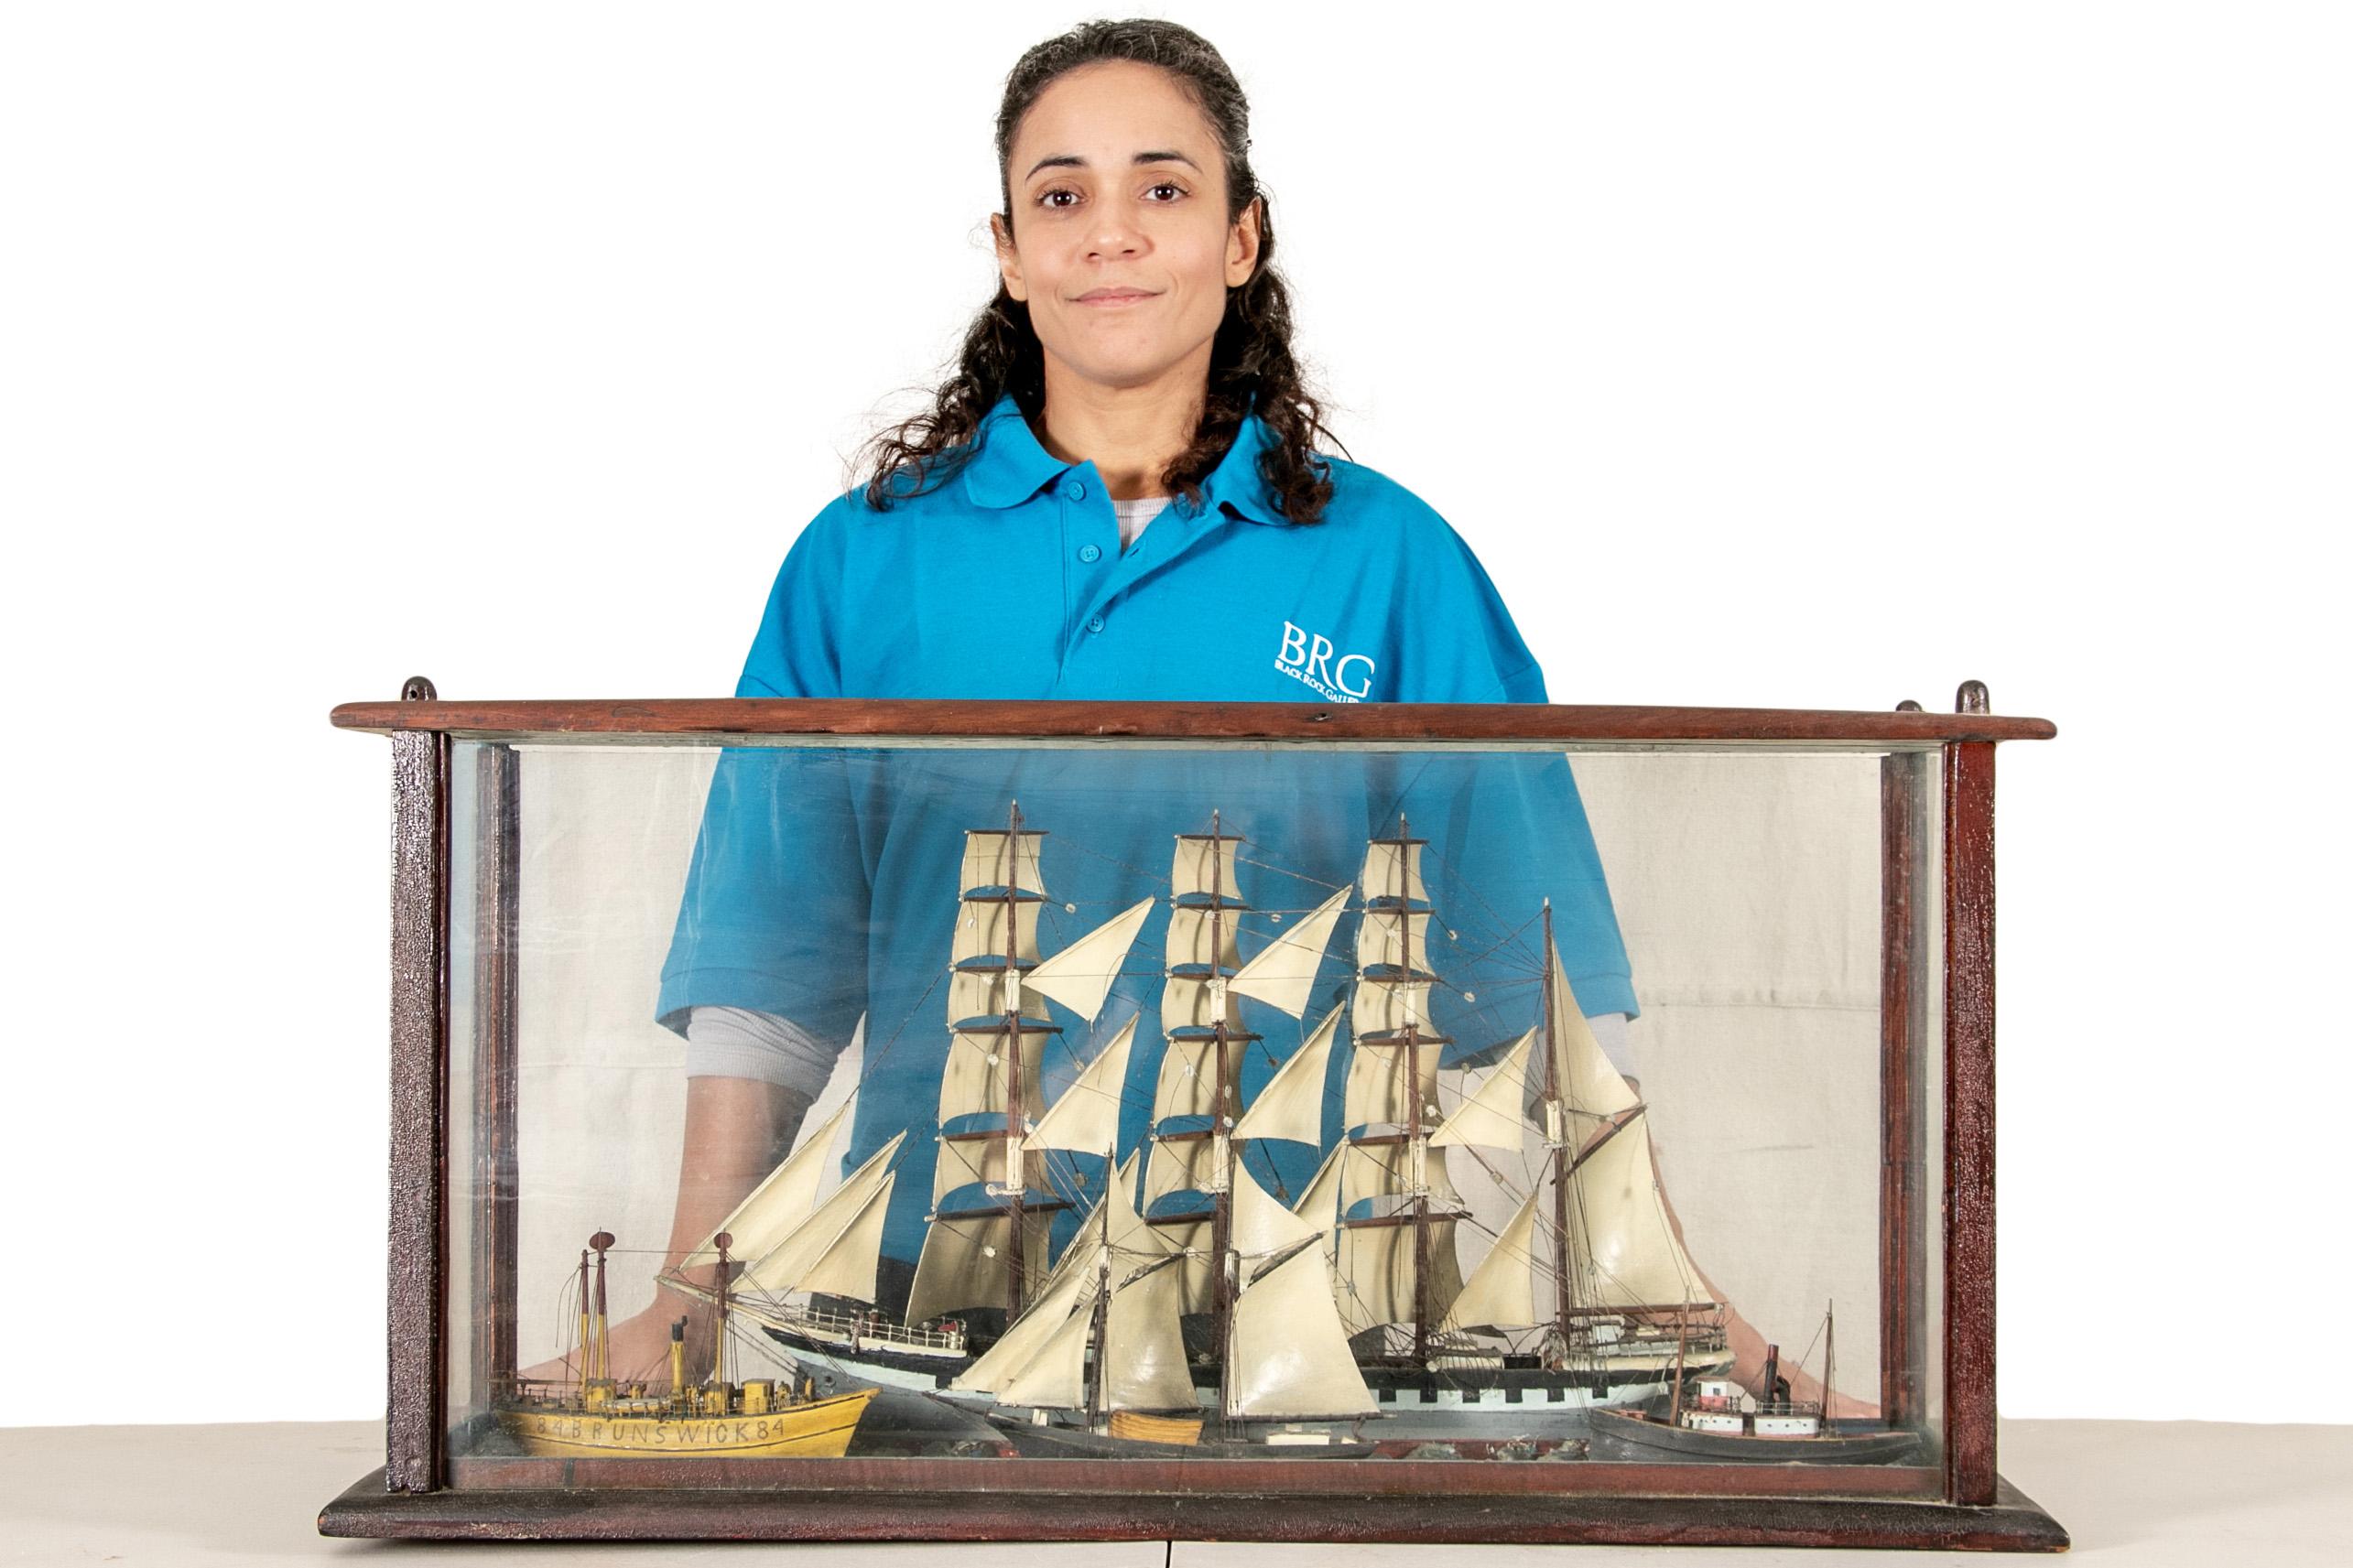 Ein beeindruckendes und ungewöhnliches Schiffsdiorama aus dem 19. Jahrhundert, das vier Schiffe auf See zeigt. Ein Viermastschoner bildet den Hintergrund, während im Vordergrund ein Schlepper, ein Zweimaster und ein Dampfschiff mit der Aufschrift